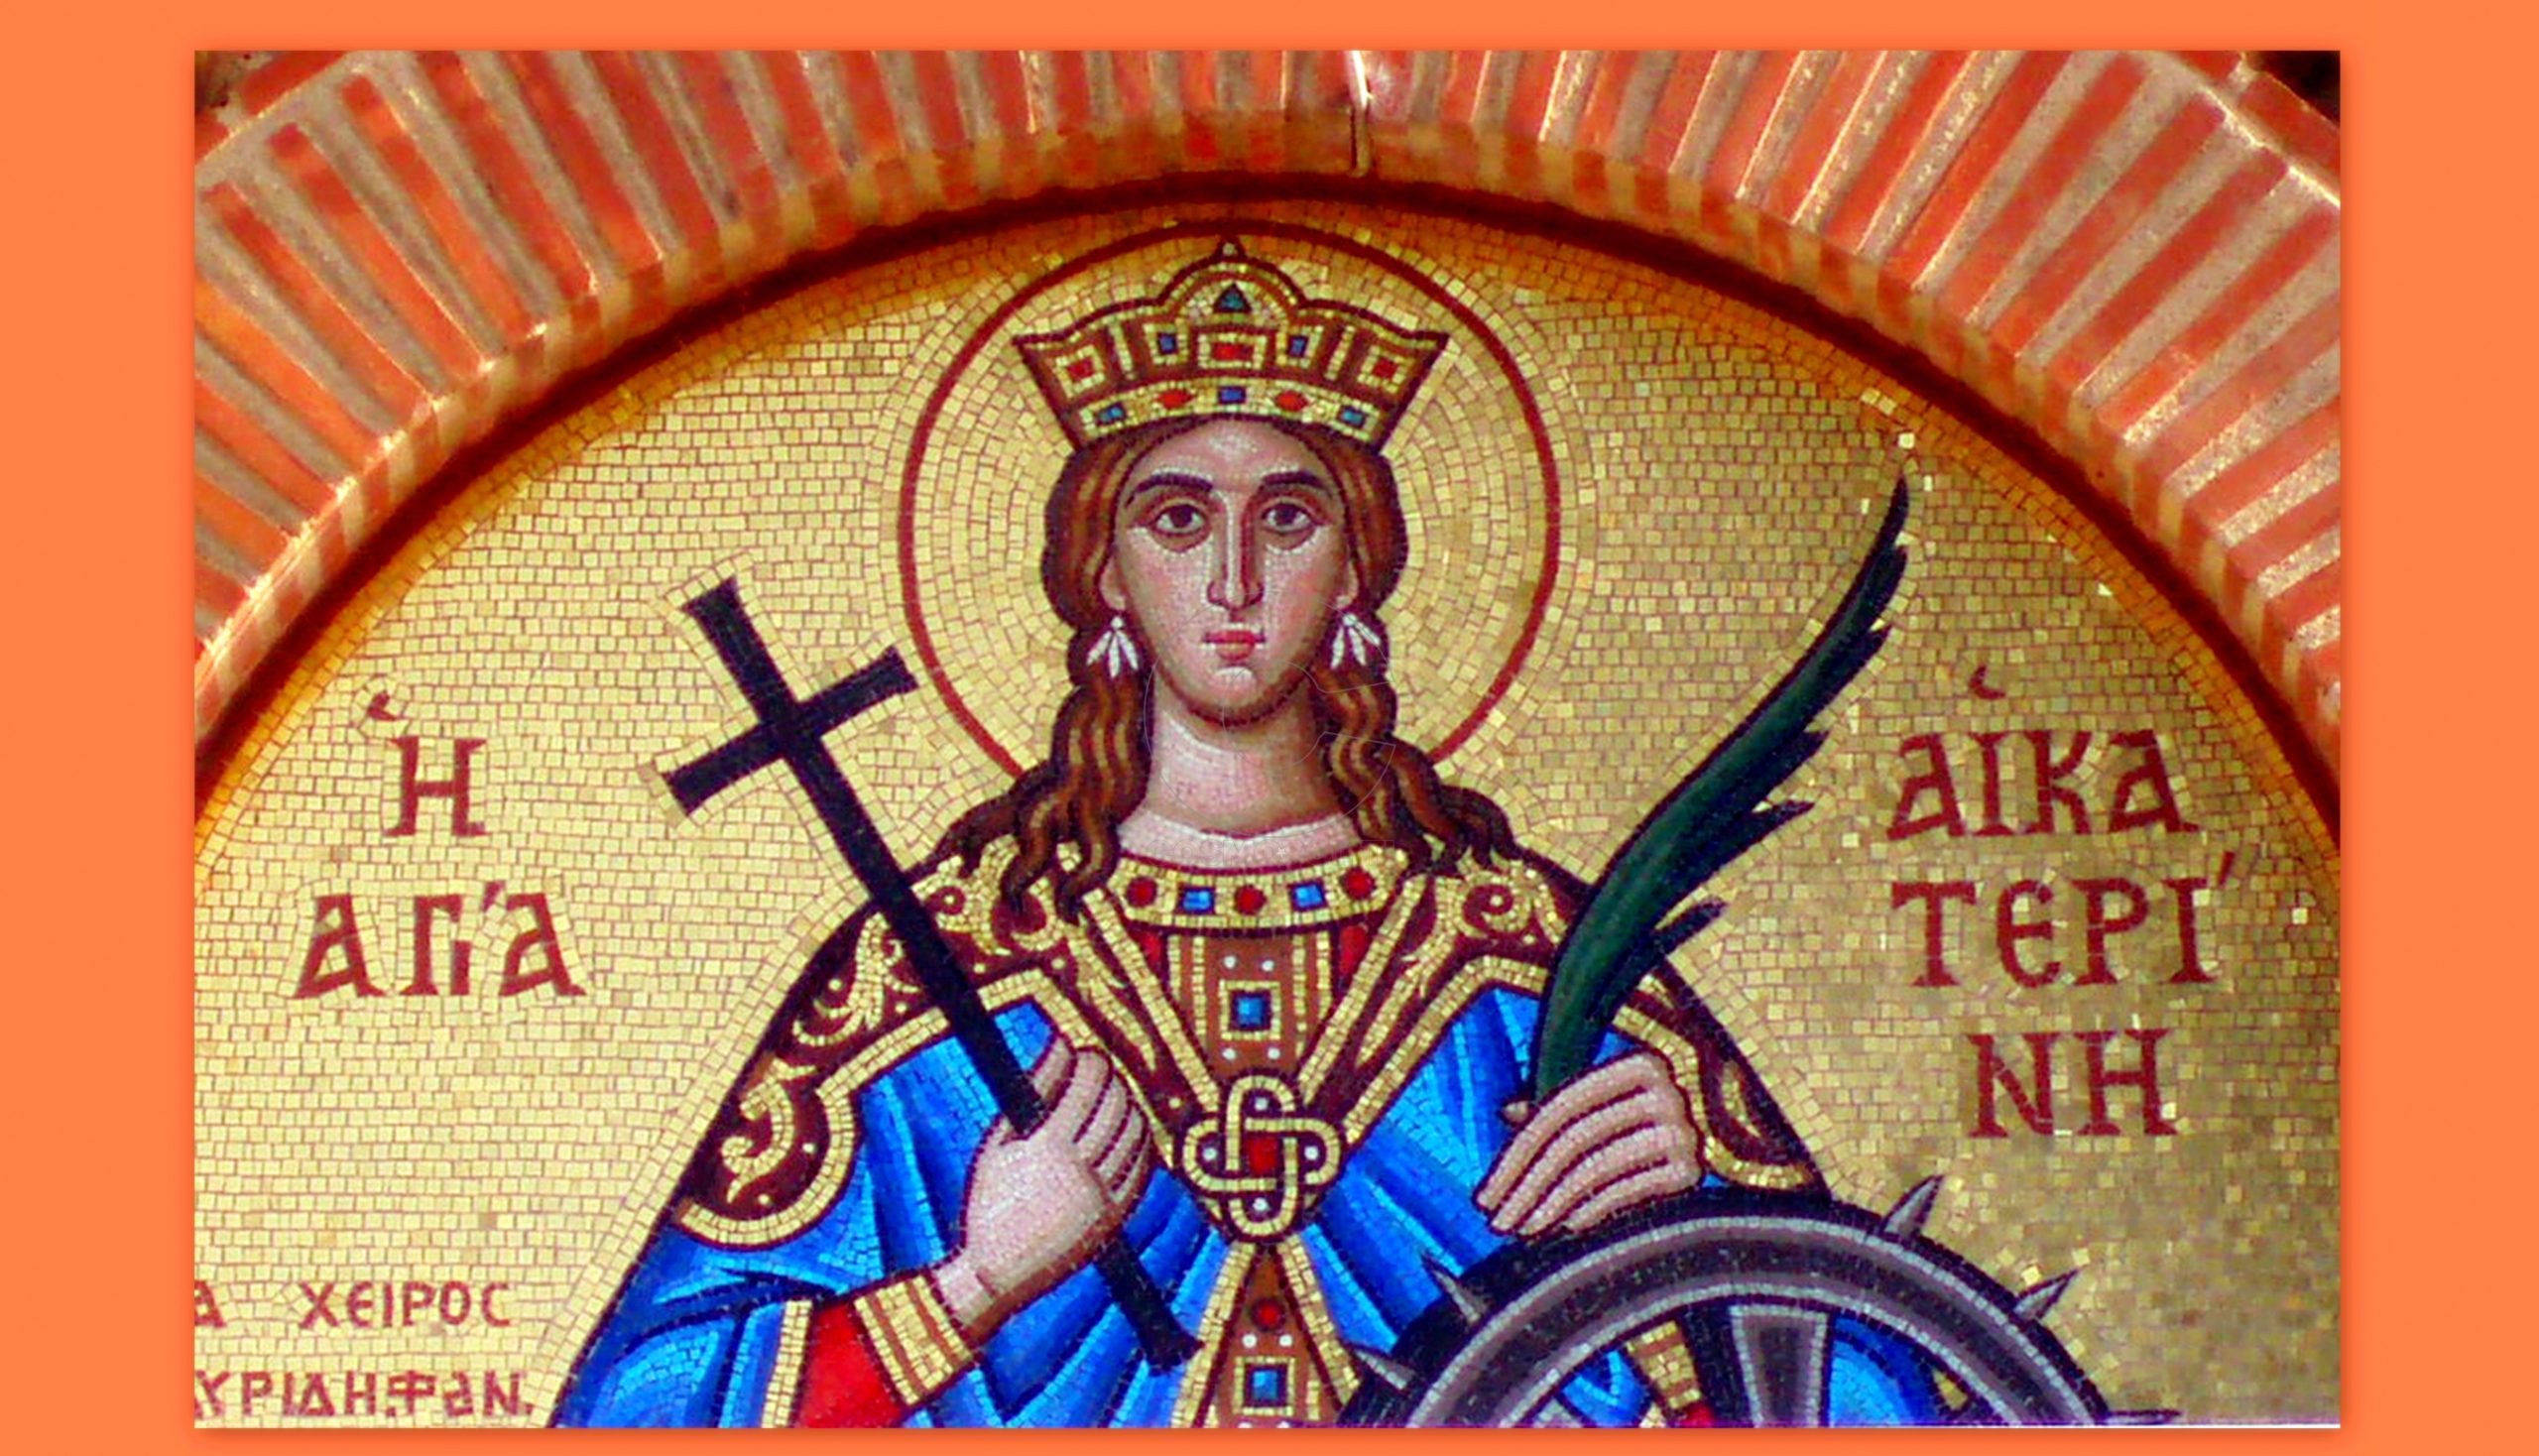 Αγία Αικατερίνη: Πως συνέβαλε στα γράμματα και στον Χριστιανισμό;